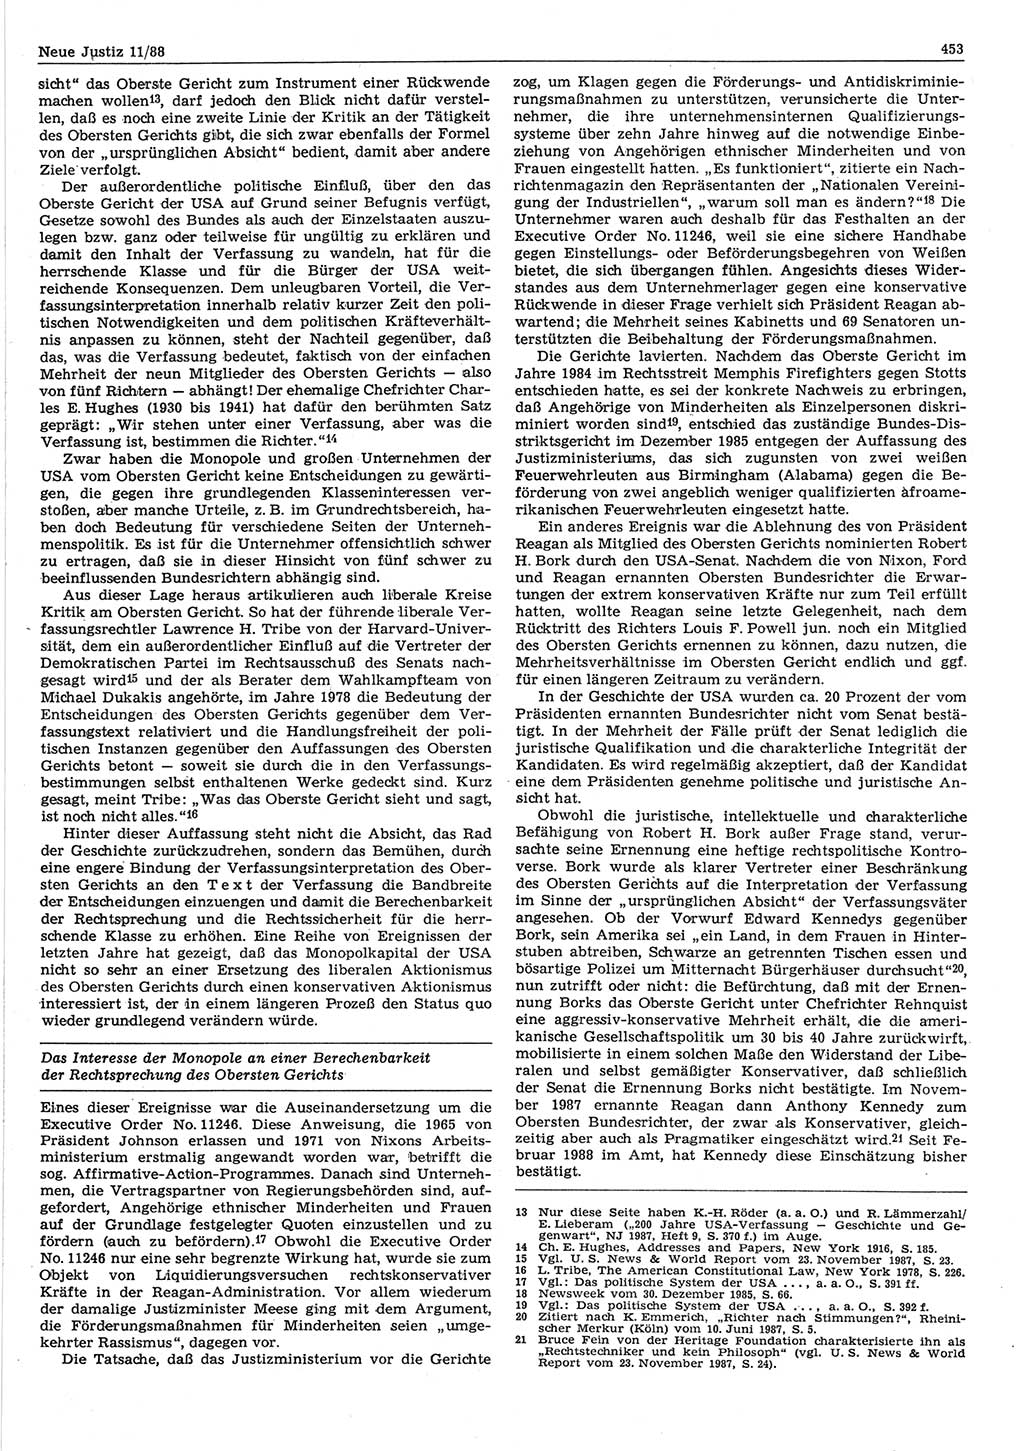 Neue Justiz (NJ), Zeitschrift für sozialistisches Recht und Gesetzlichkeit [Deutsche Demokratische Republik (DDR)], 42. Jahrgang 1988, Seite 453 (NJ DDR 1988, S. 453)